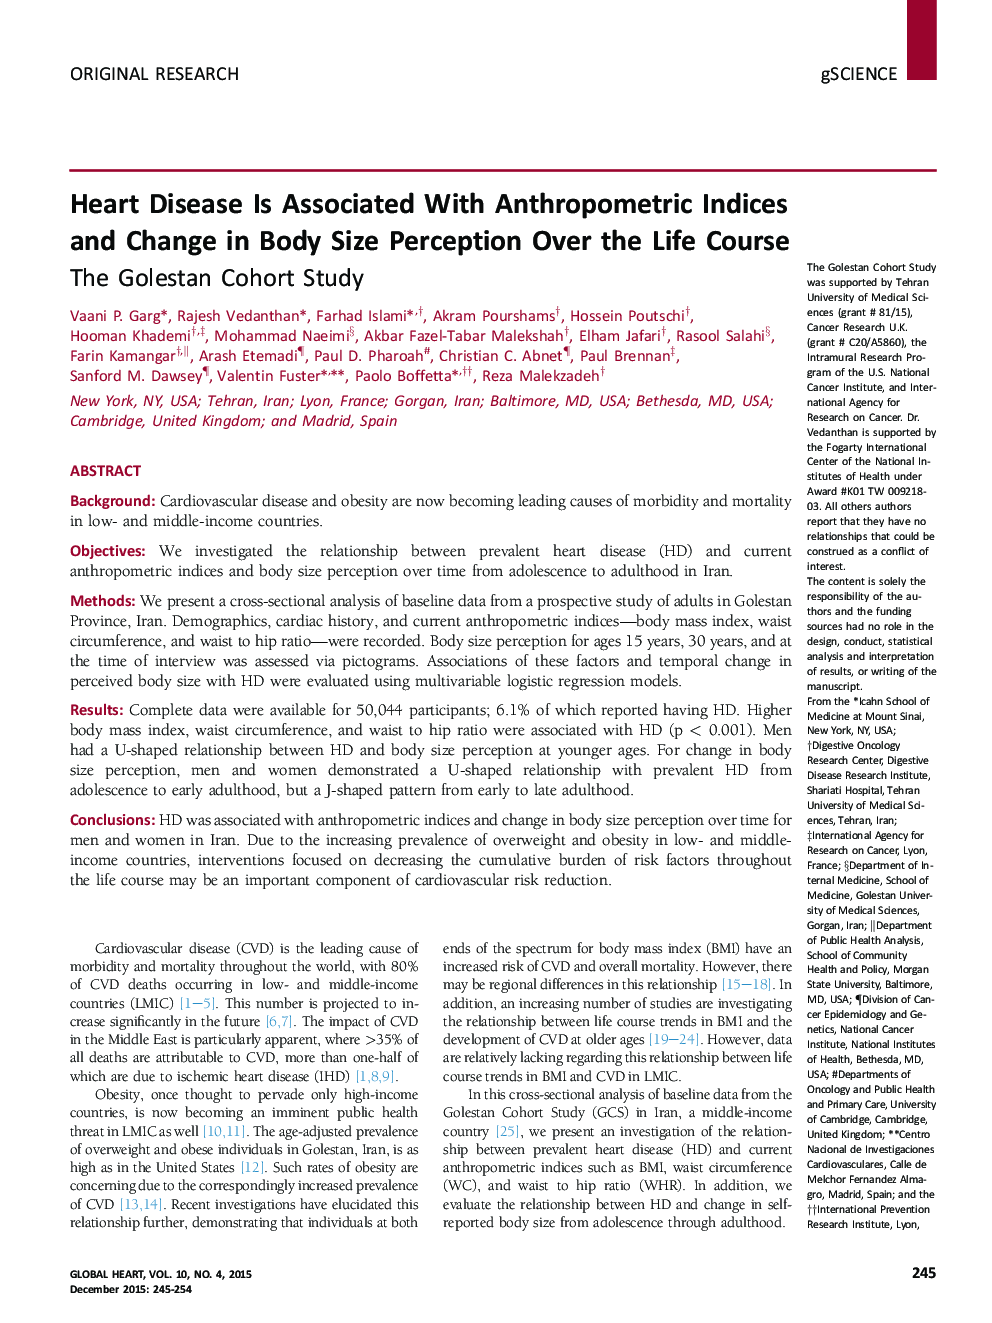 بیماری های قلبی مرتبط با شاخص های تن سنجی و تغییر در درک بدن در طول زندگی دوره: مطالعه هماهنگی گلستان 